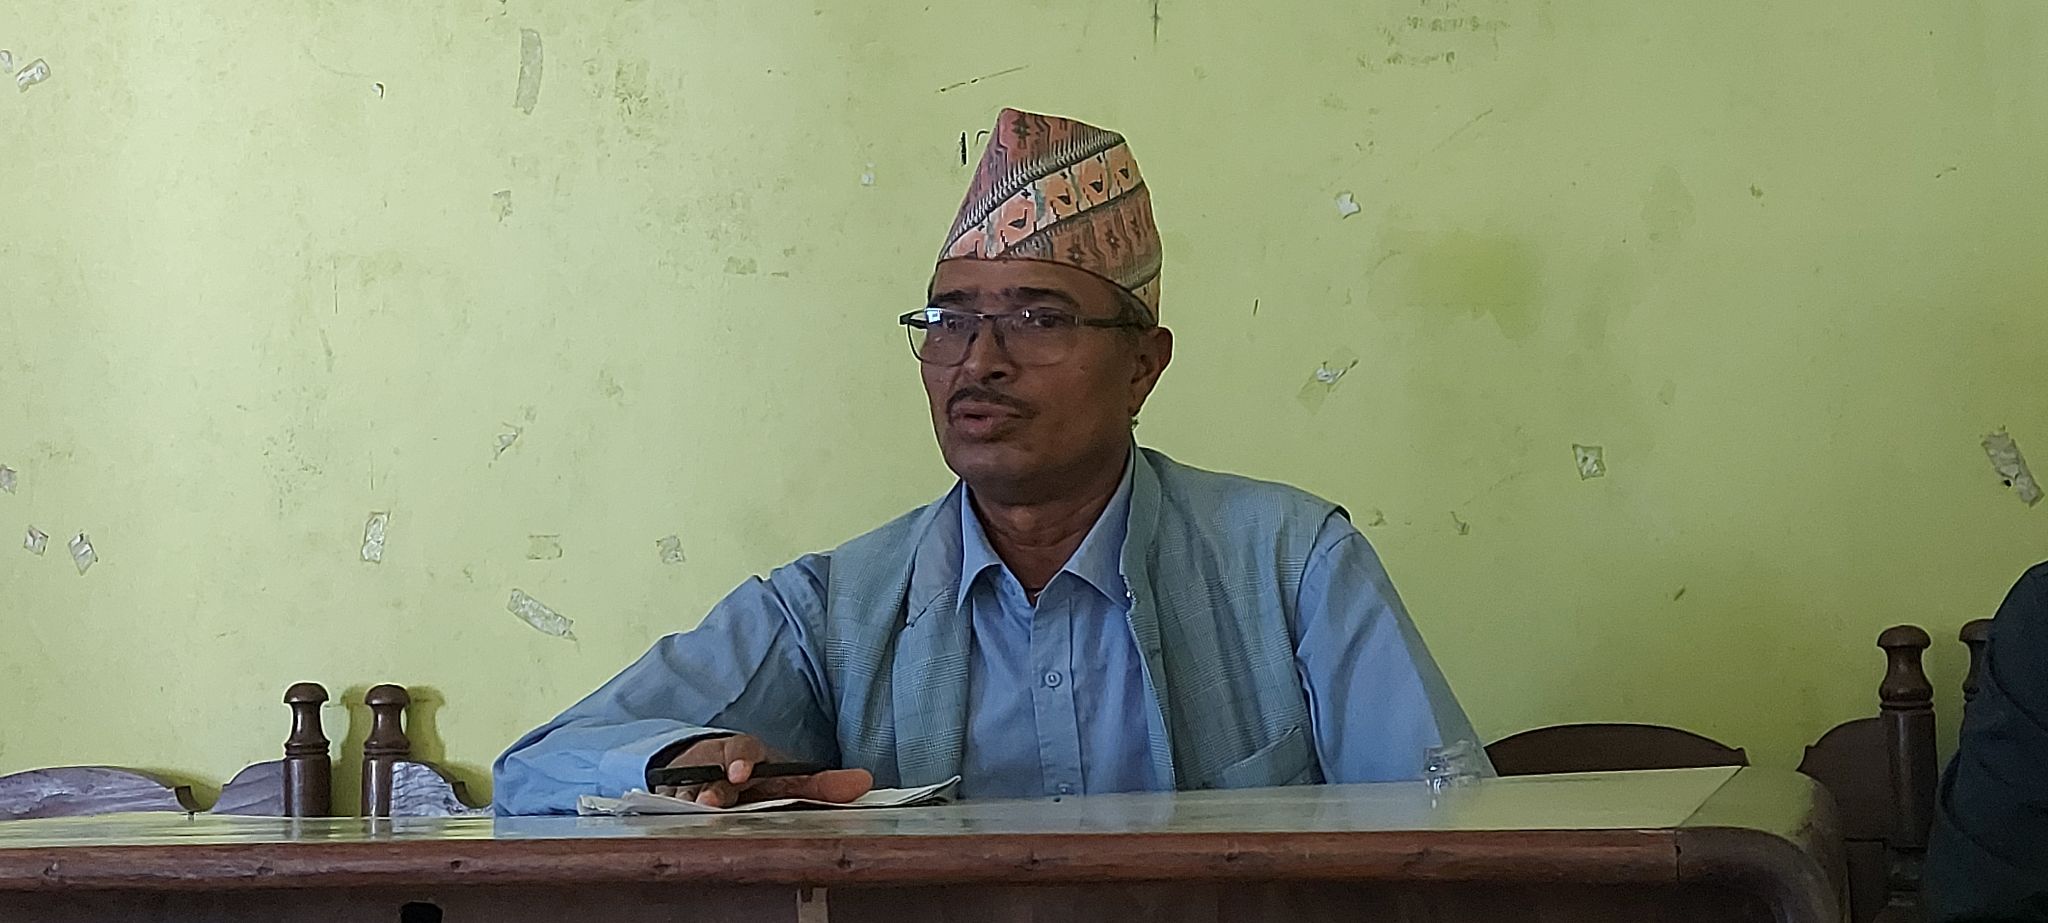 बझाङबाट स्वतन्त्र उम्मेदवारी दिएका नेपाली कांग्रेसका नेता जगतप्रसाद जोशीको  उम्मेदवारी फिर्ता